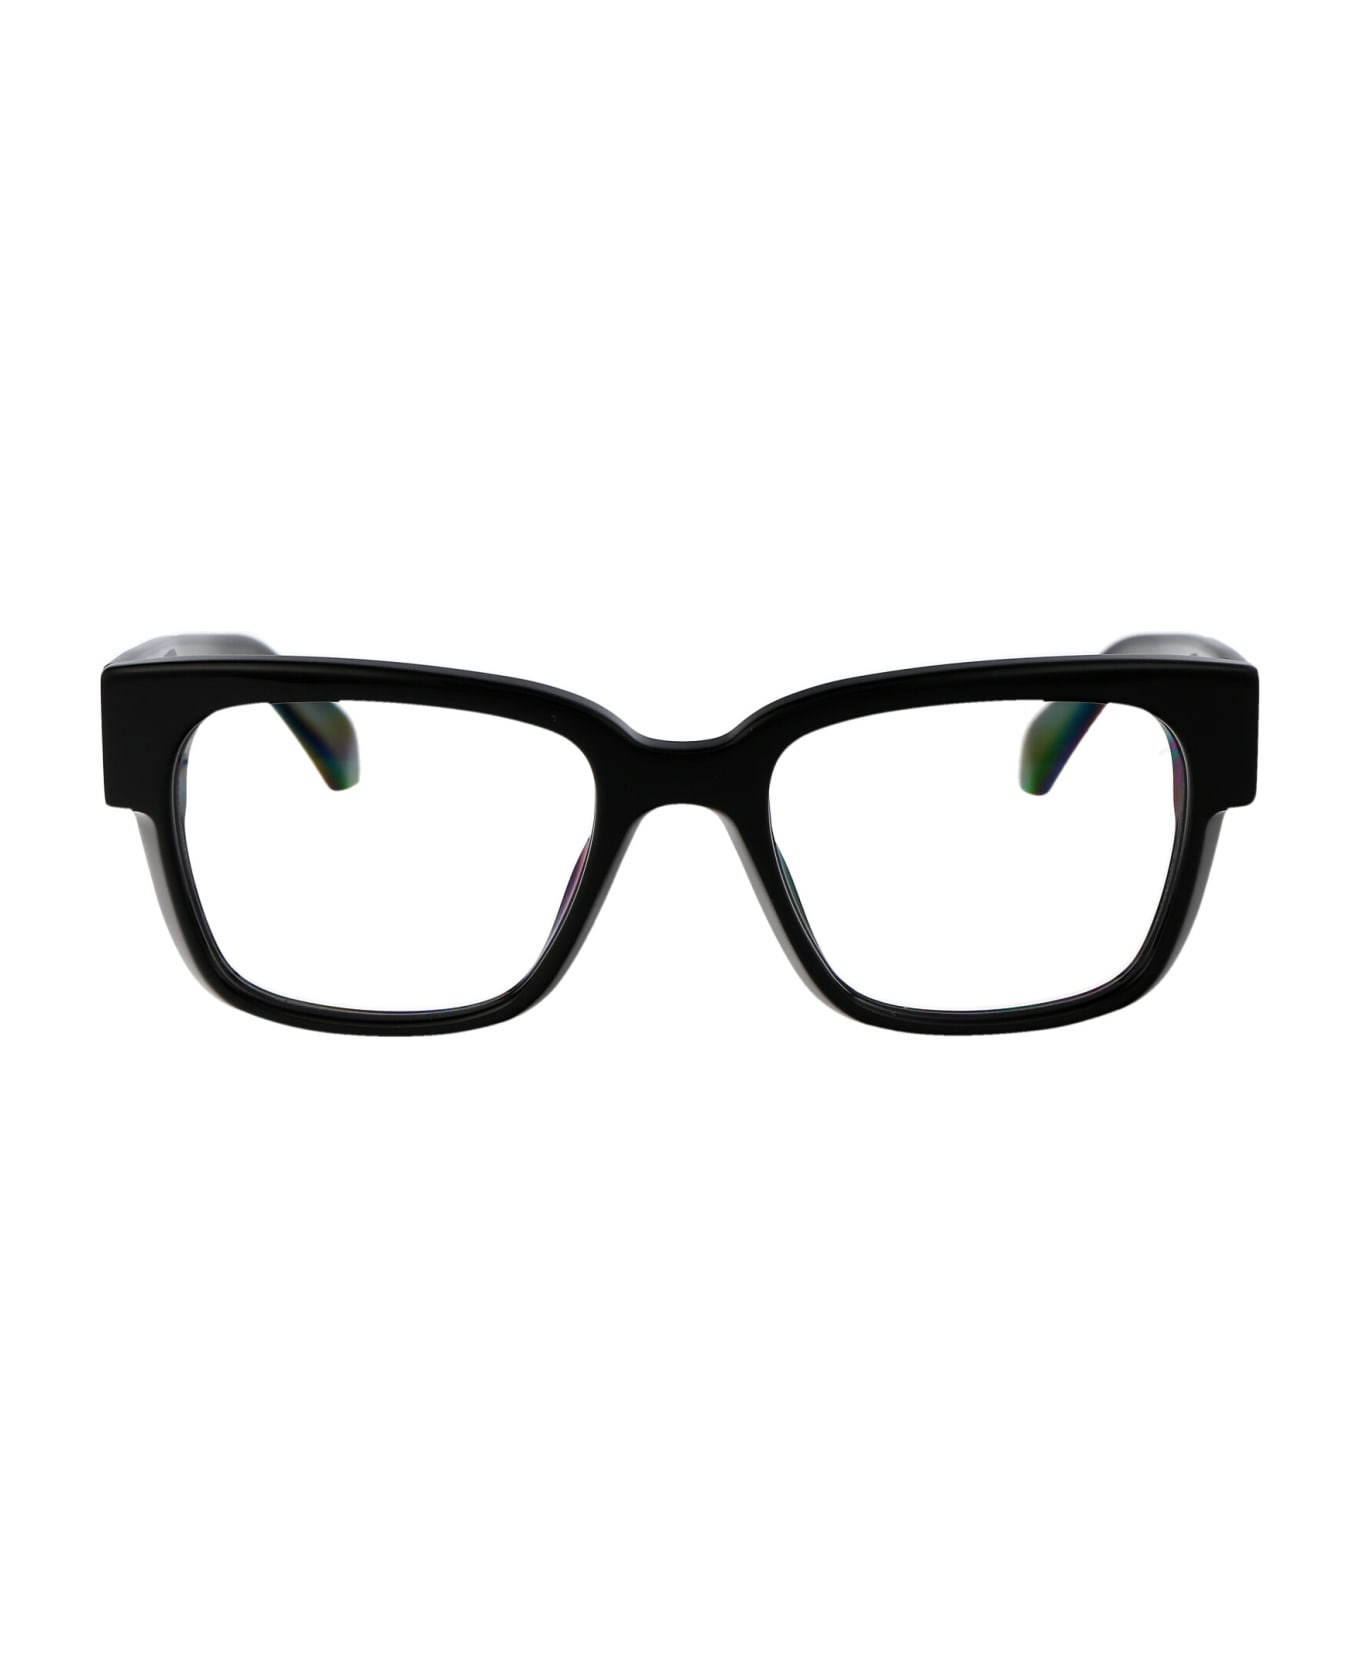 Off-White Optical Style 59 Glasses - 1000 BLACK アイウェア